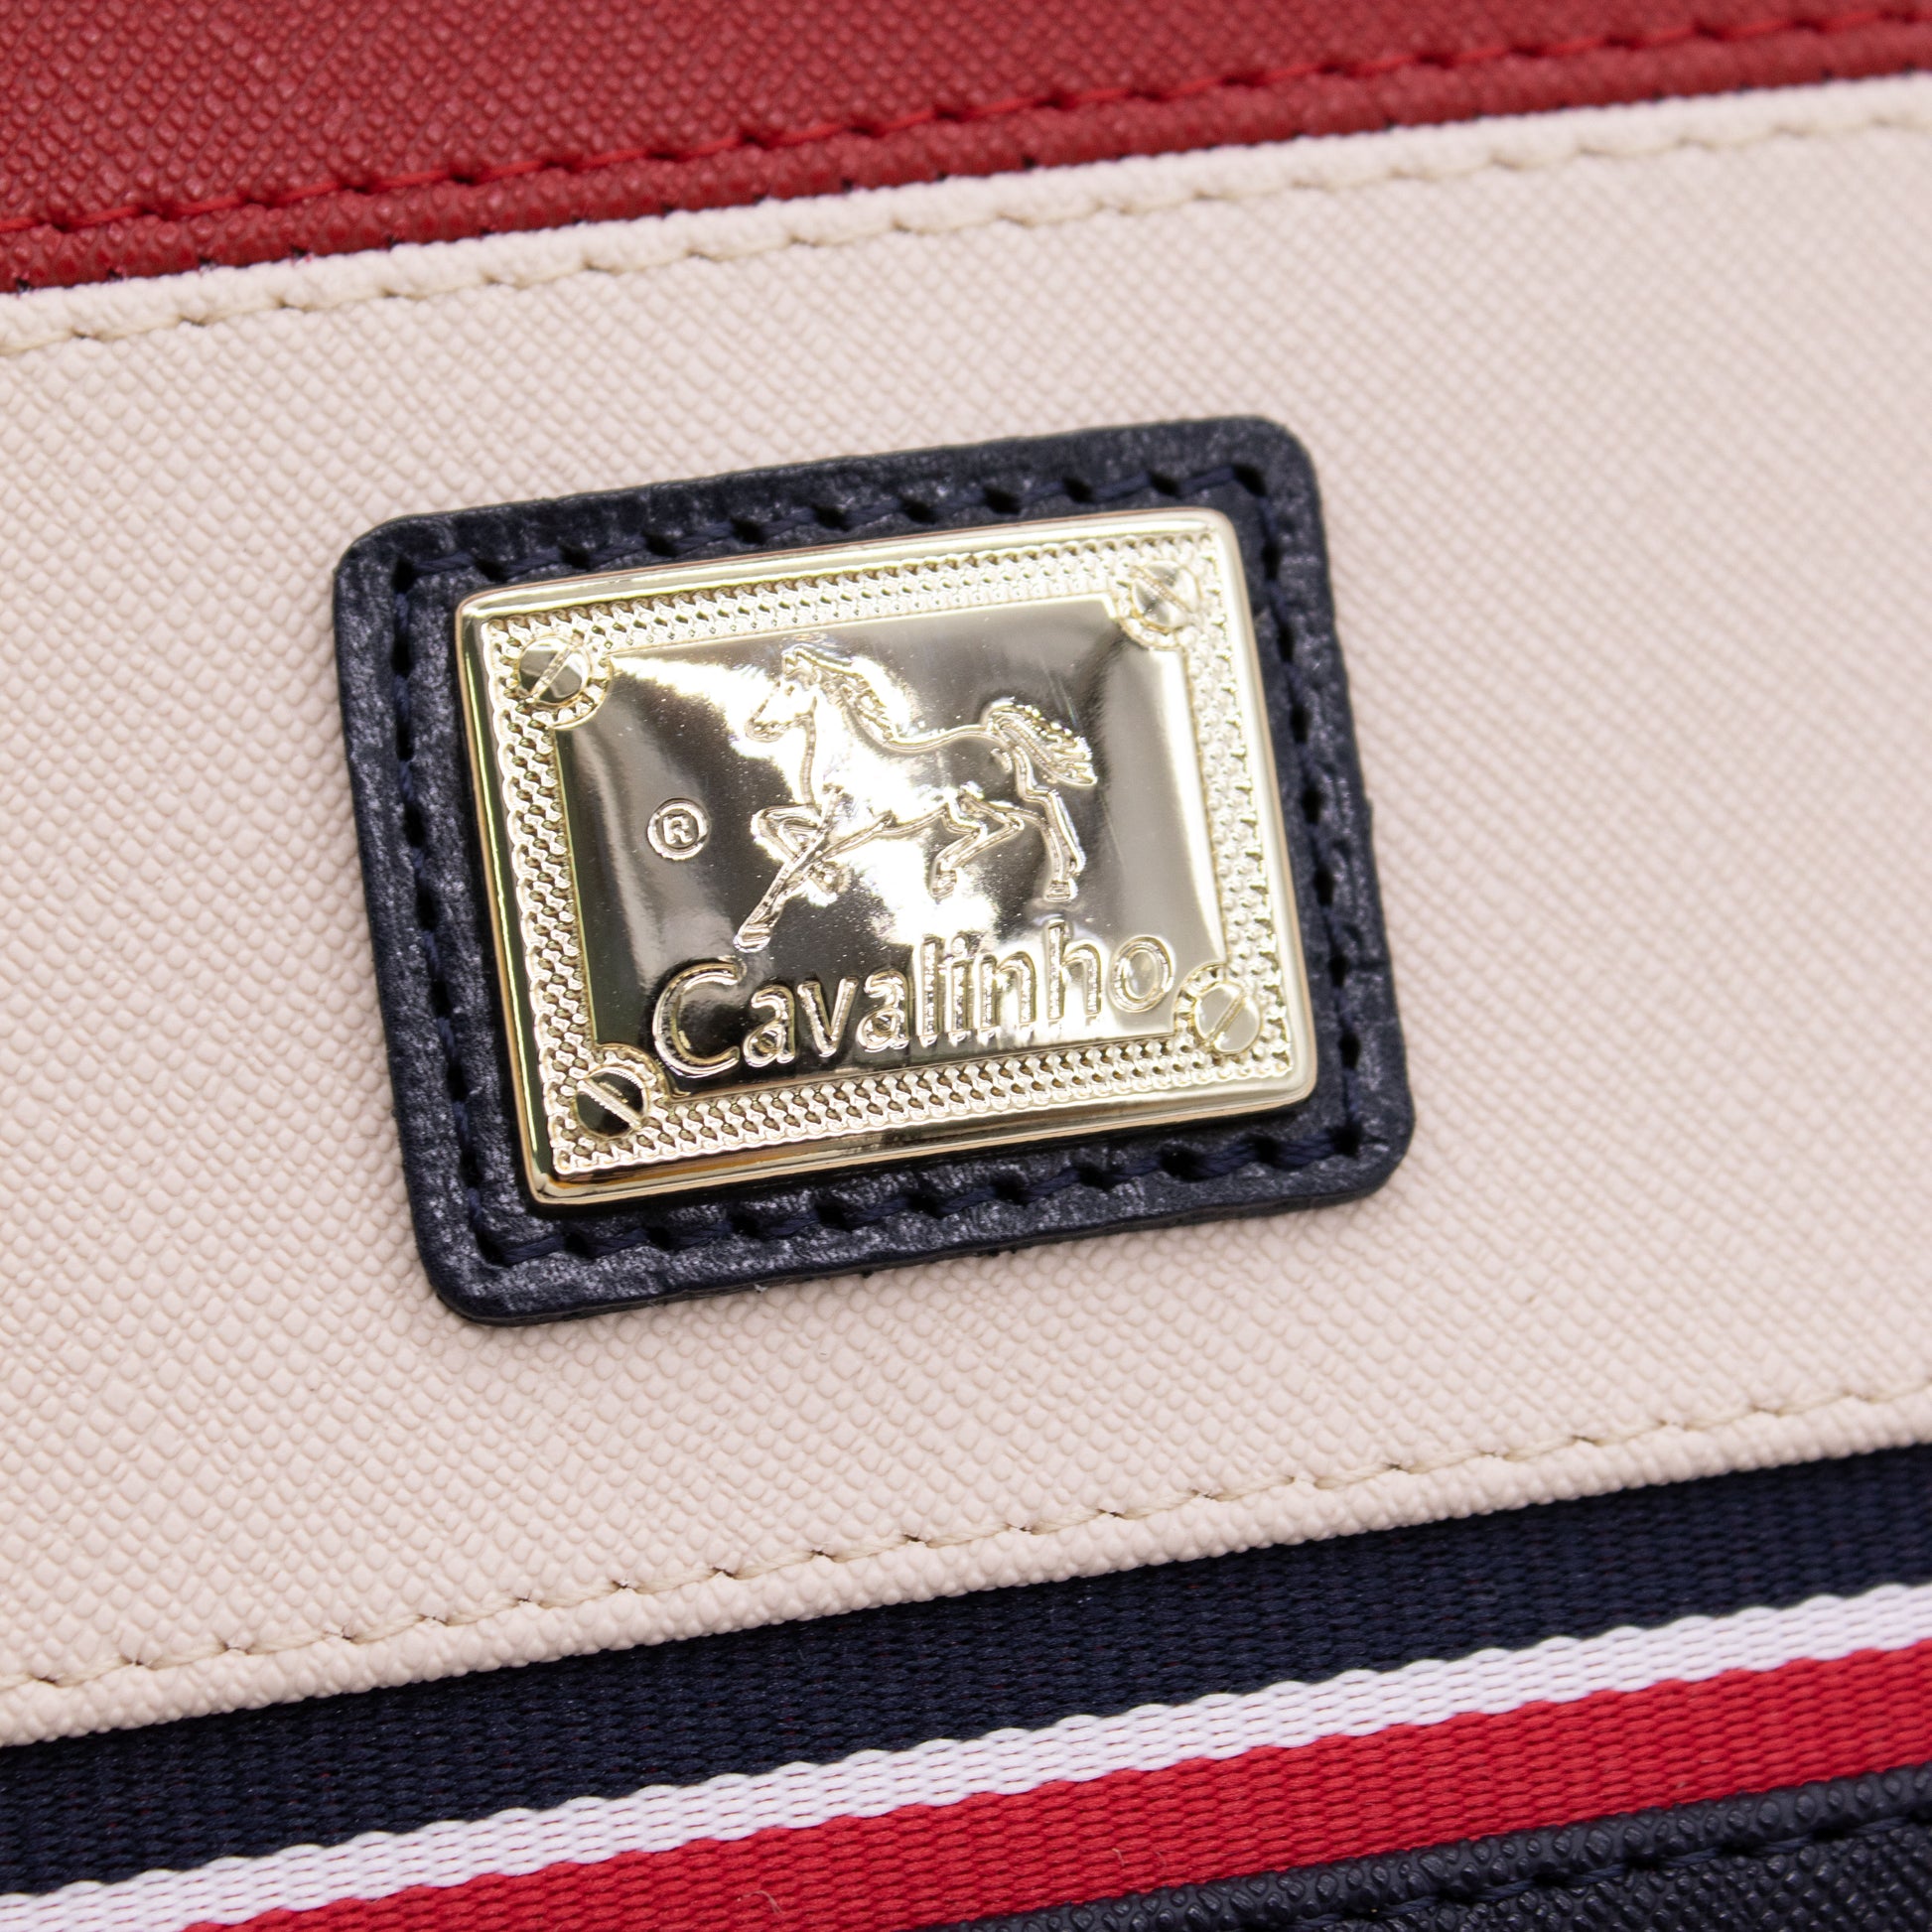 #color_ Navy Beige Red | Cavalinho Unique Crossbody Bag - Navy Beige Red - 18260251_2